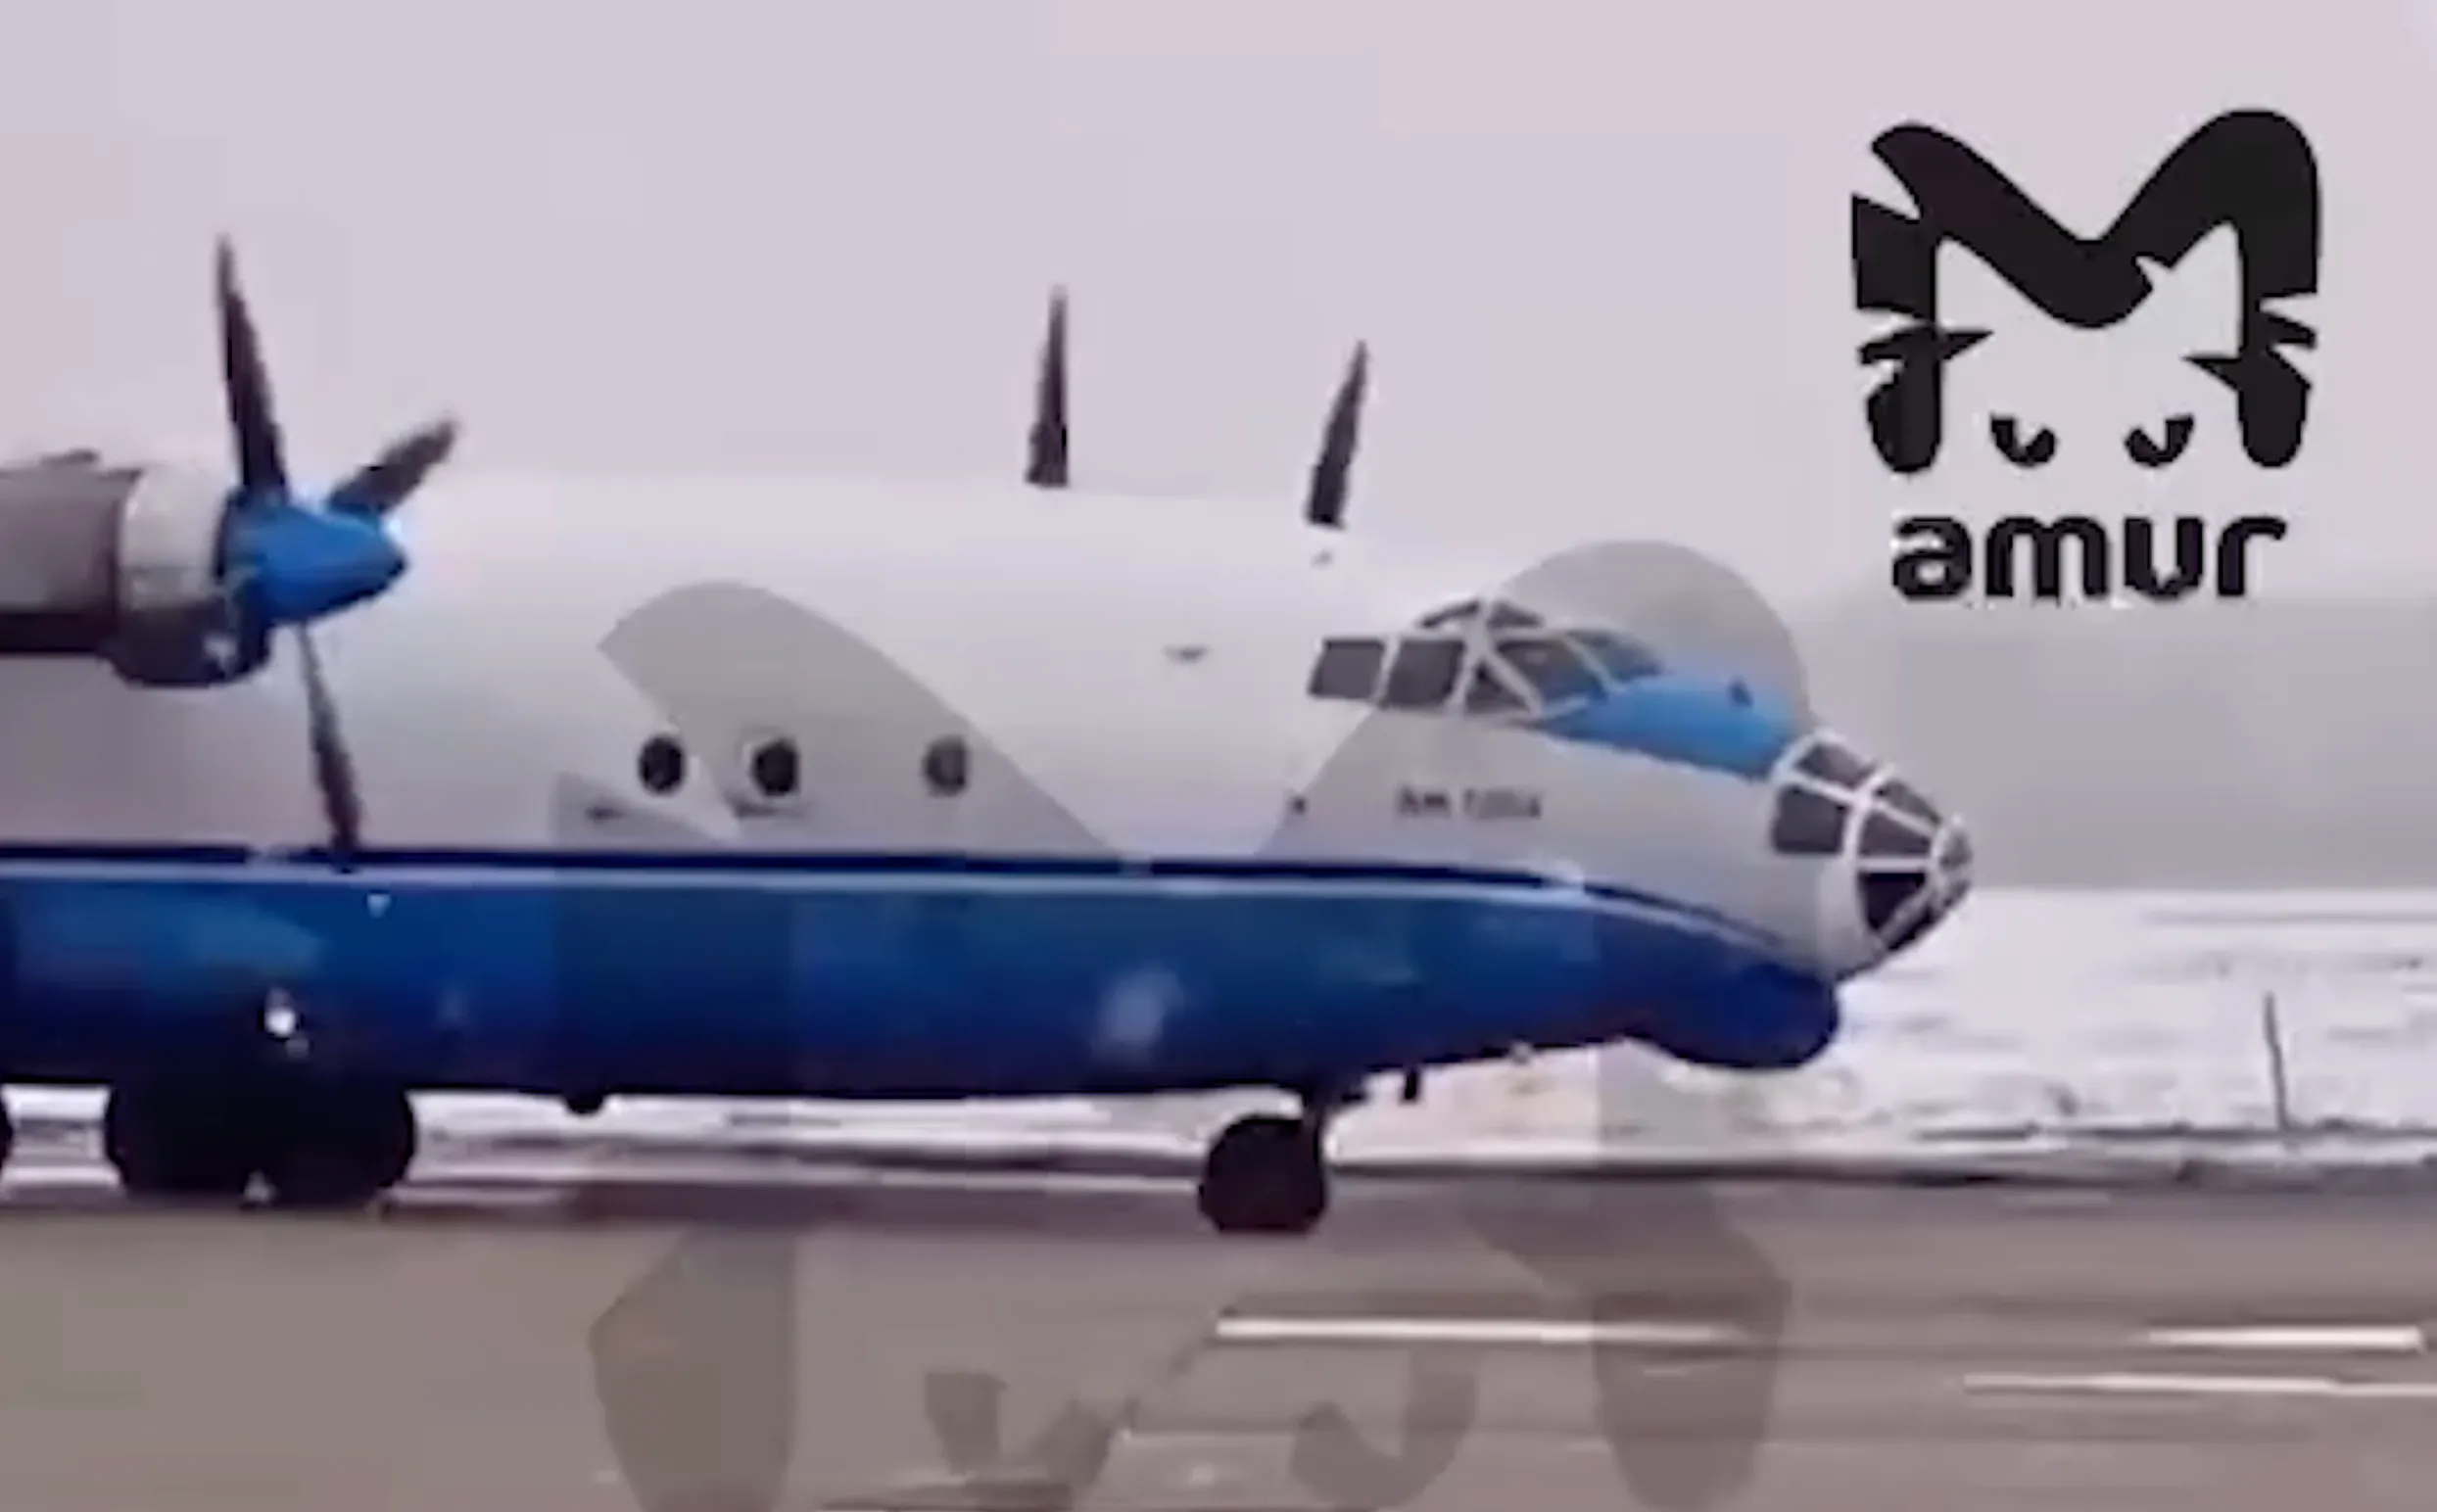 Военно-транспортный самолёт Ан-12 совершил аварийную посадку на аэродроме Хурба